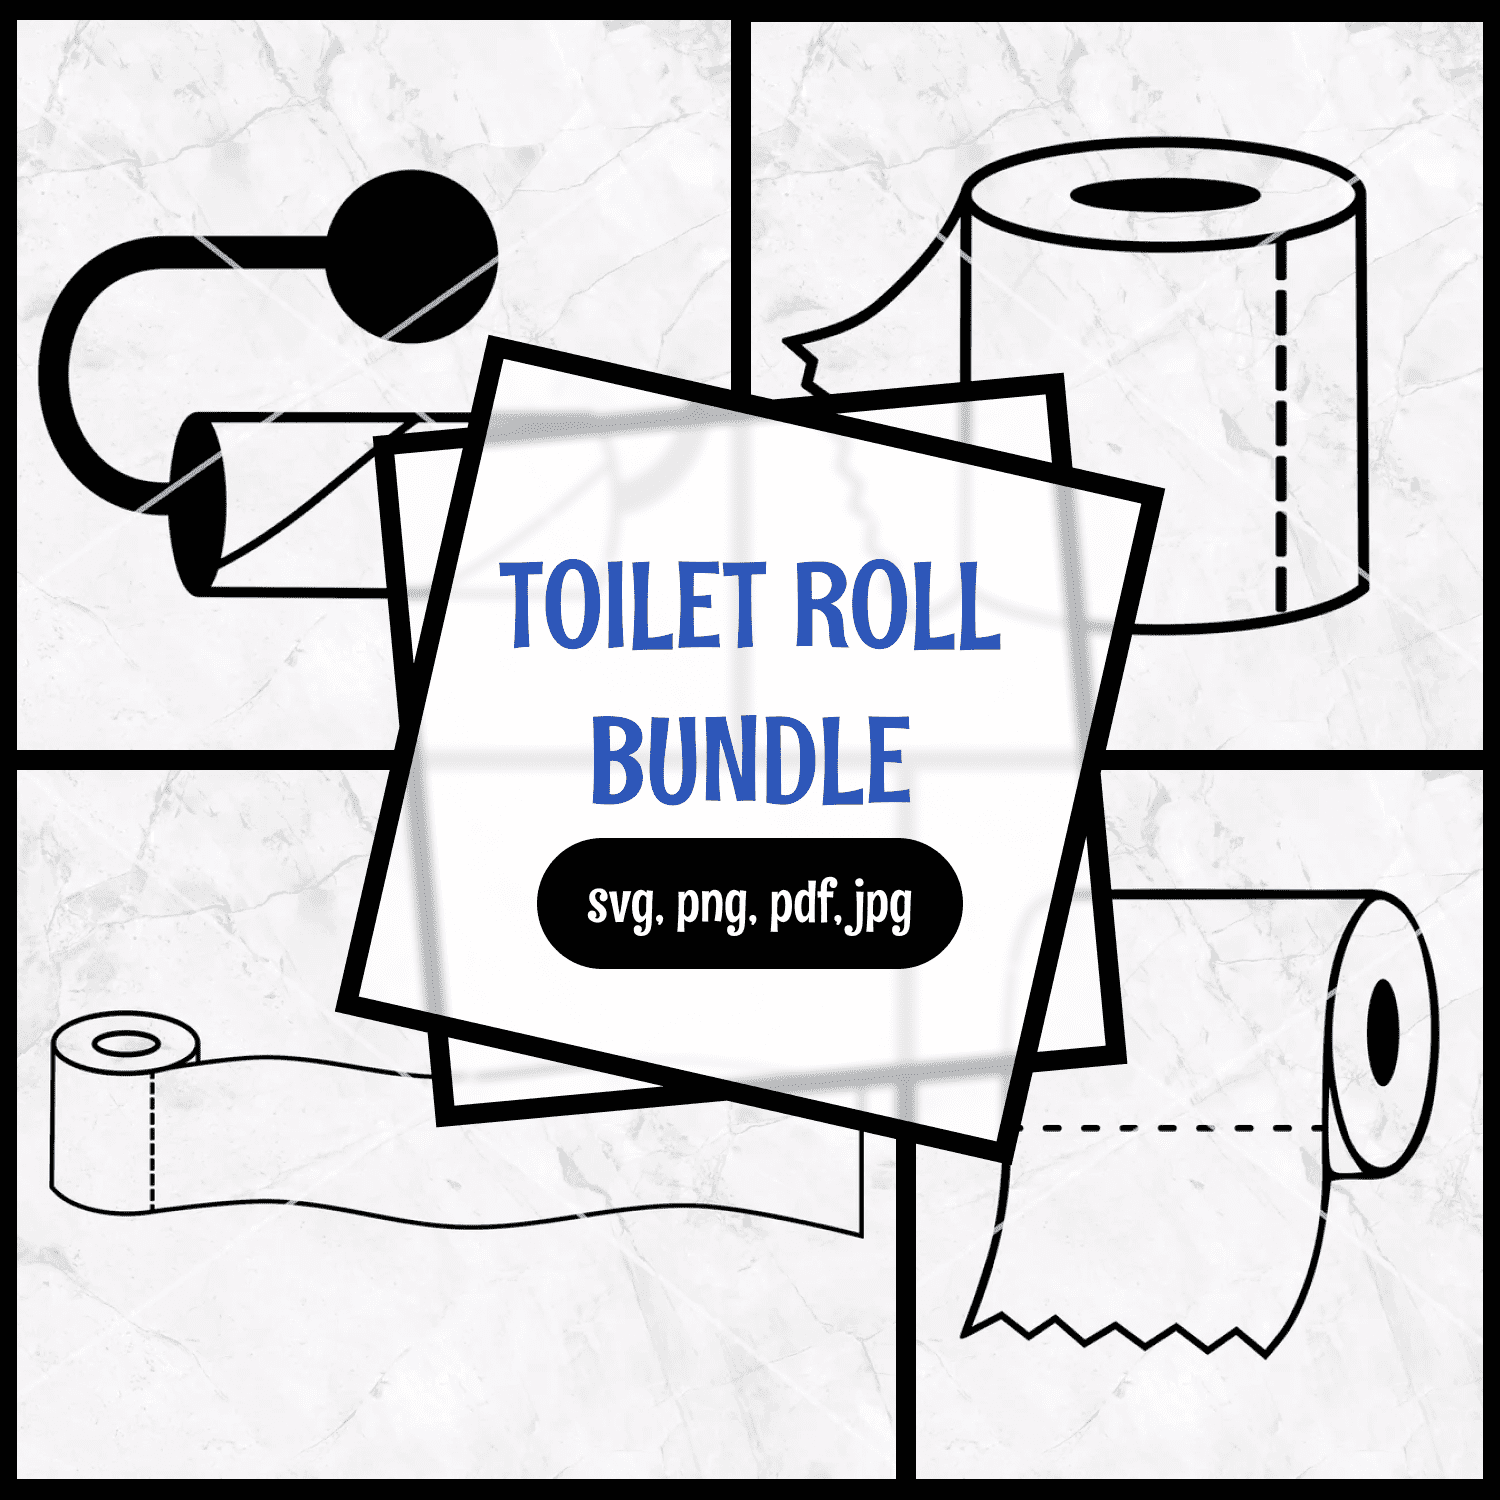 Loo / toilet roll bundle.